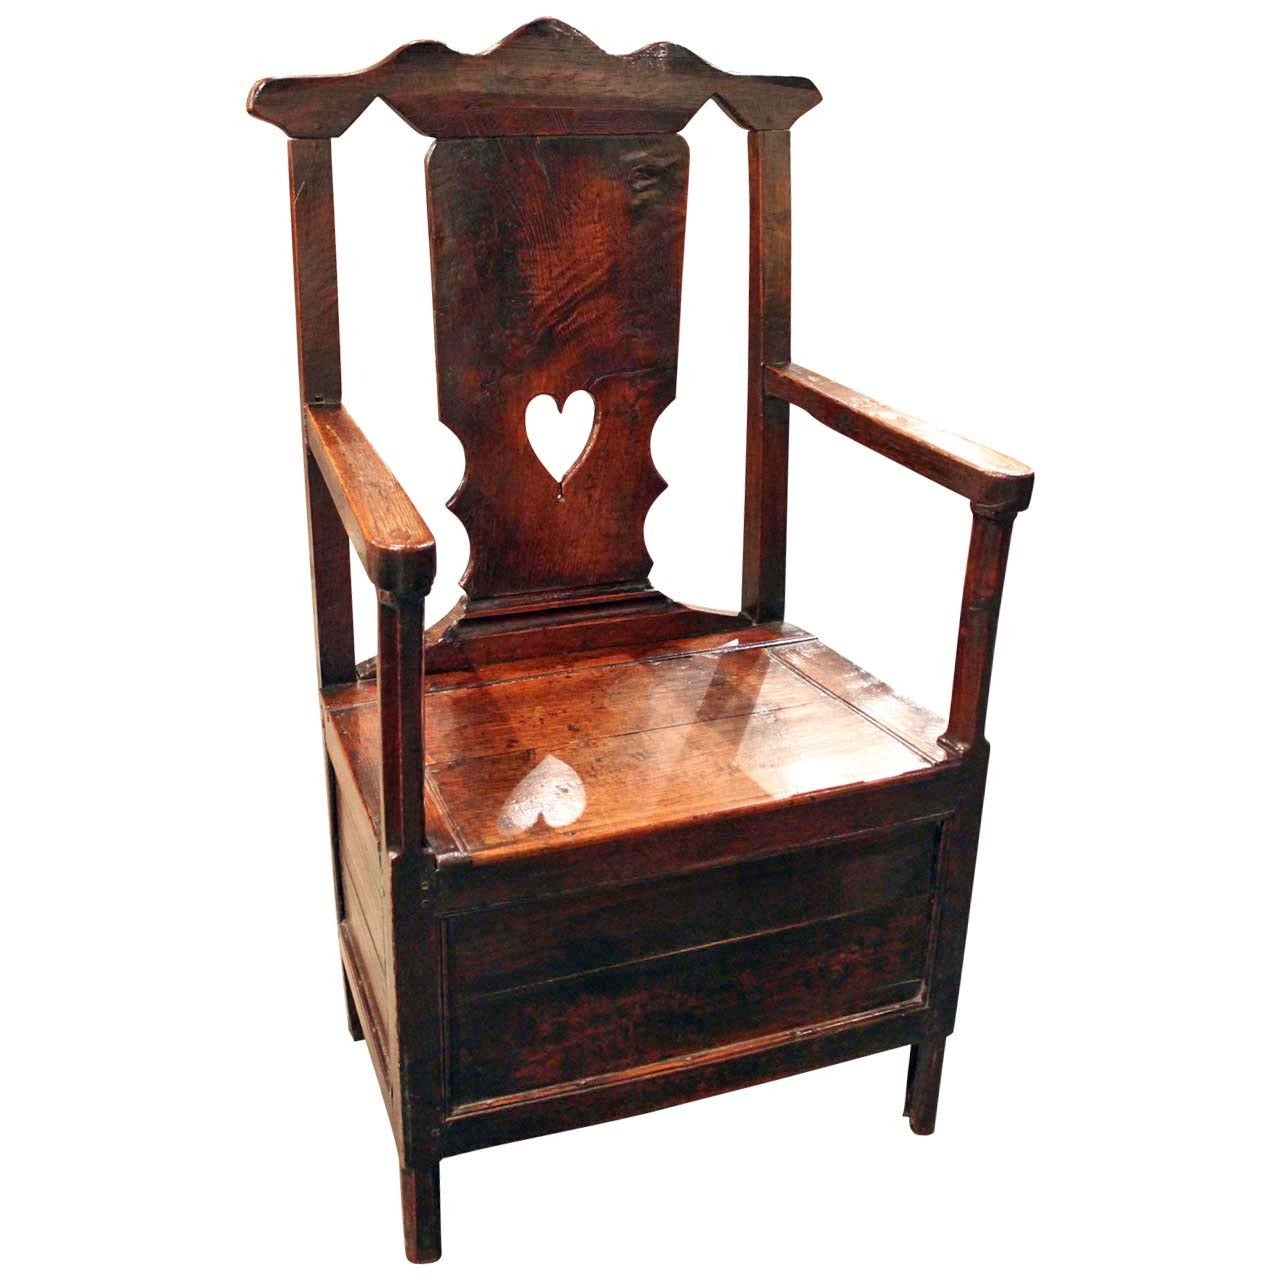 Welsh Oak Chair with Cupboard below Seat For Sale